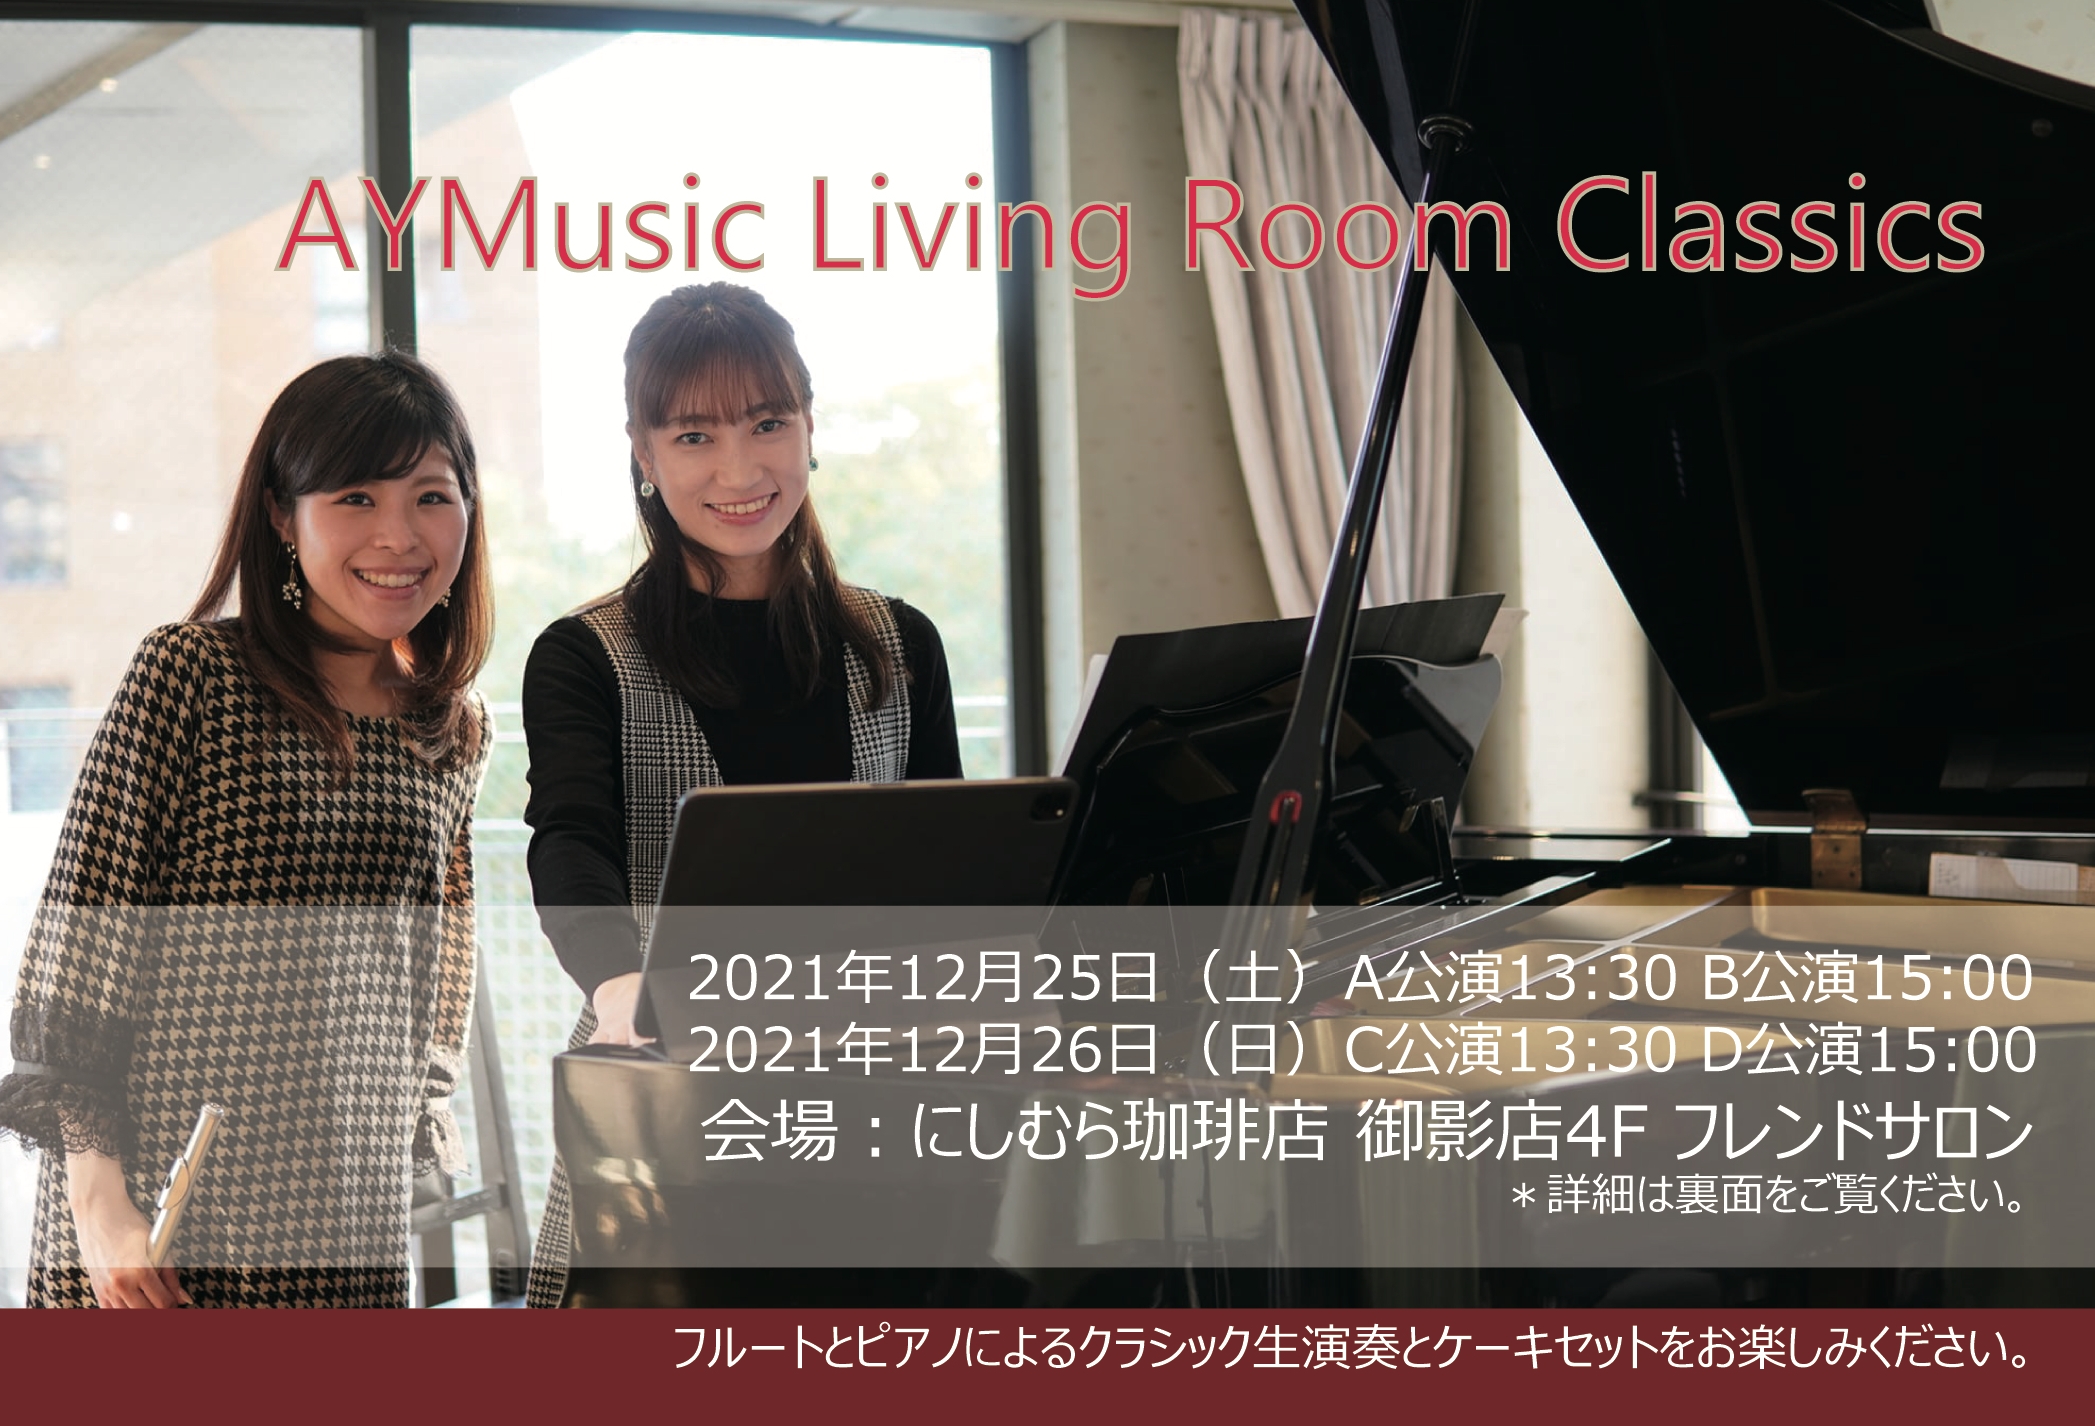 AYMusic Living Room Classics, 鷲尾有香, 米本彩夏